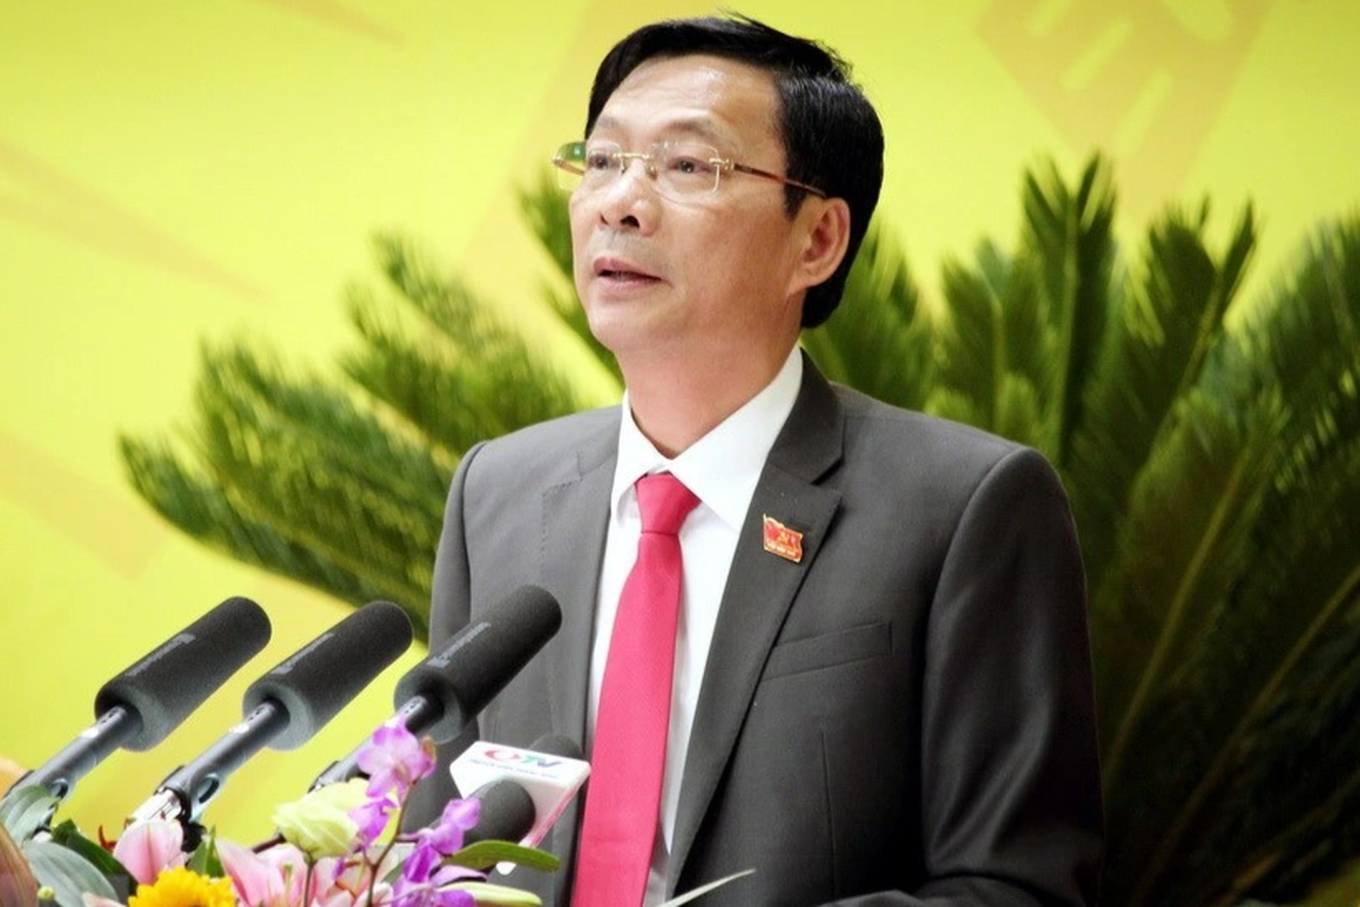 Thủ tướng kỷ luật xóa tư cách chức vụ của 2 cựu Chủ tịch tỉnh Quảng Ninh - 1